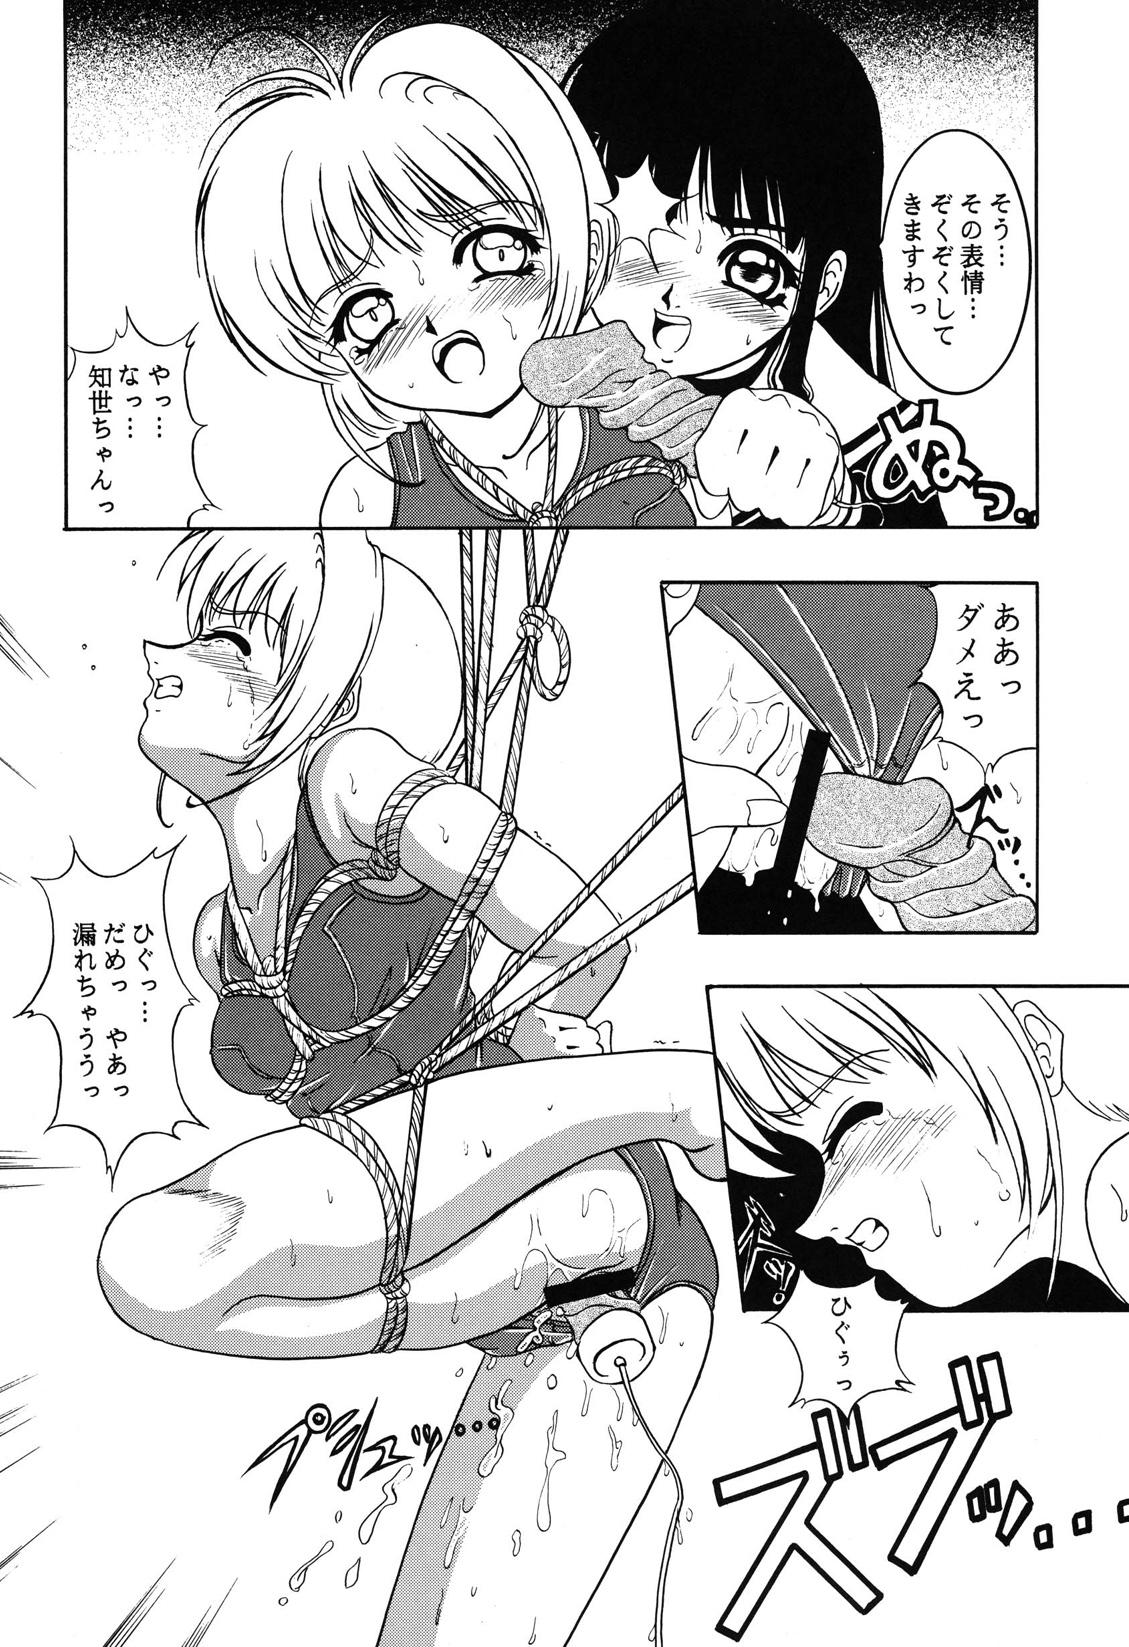 Pussy Lick Hana ni Arashi no Rei hemo Aruzo - Cardcaptor sakura Spit - Page 10